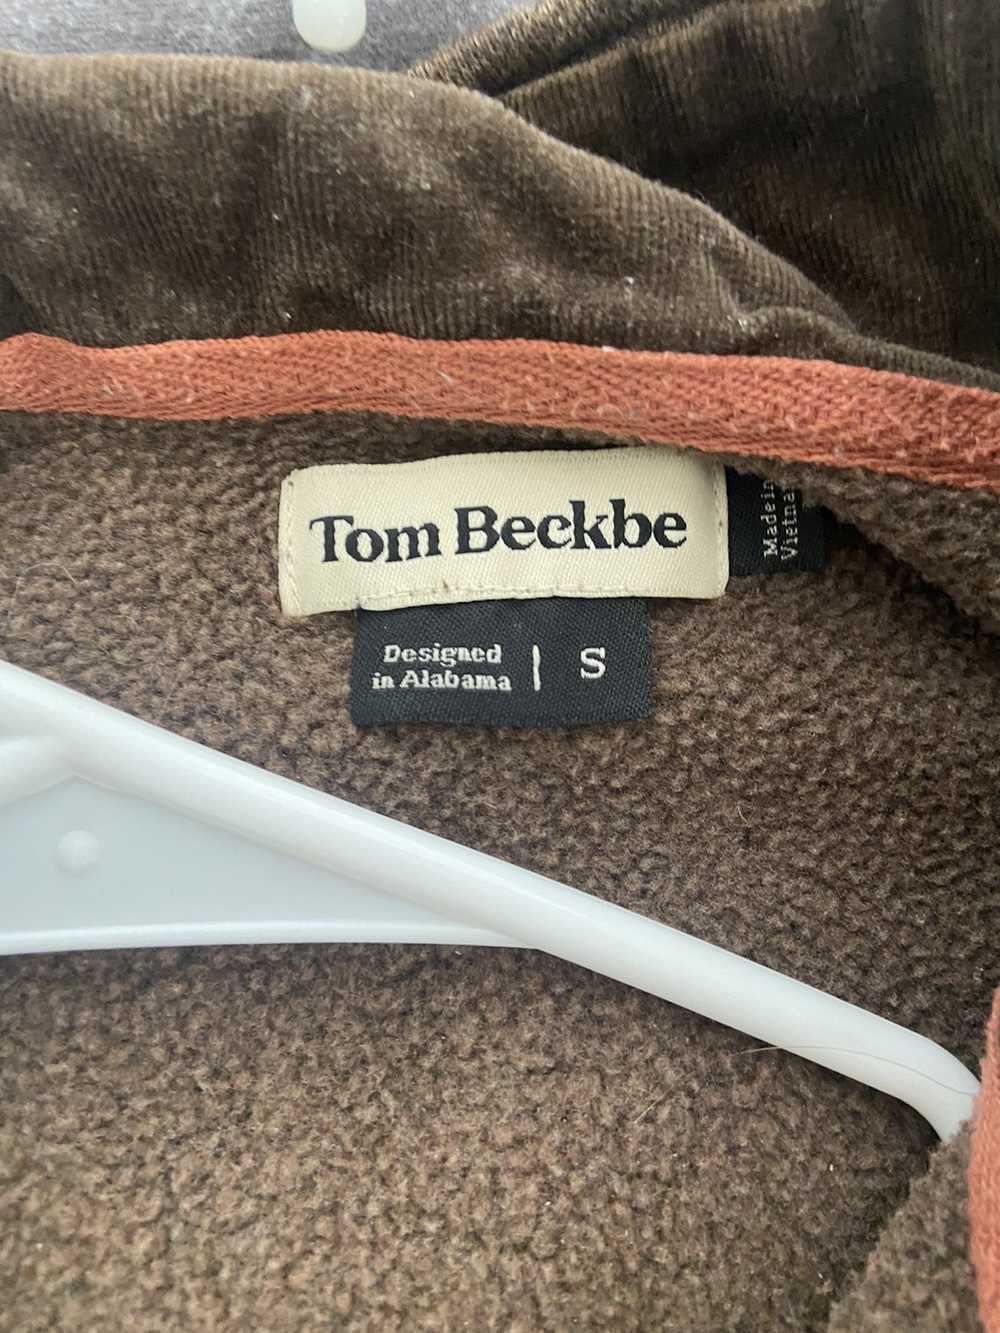 Tom Beckbe Tom Beckbe fleece - image 3